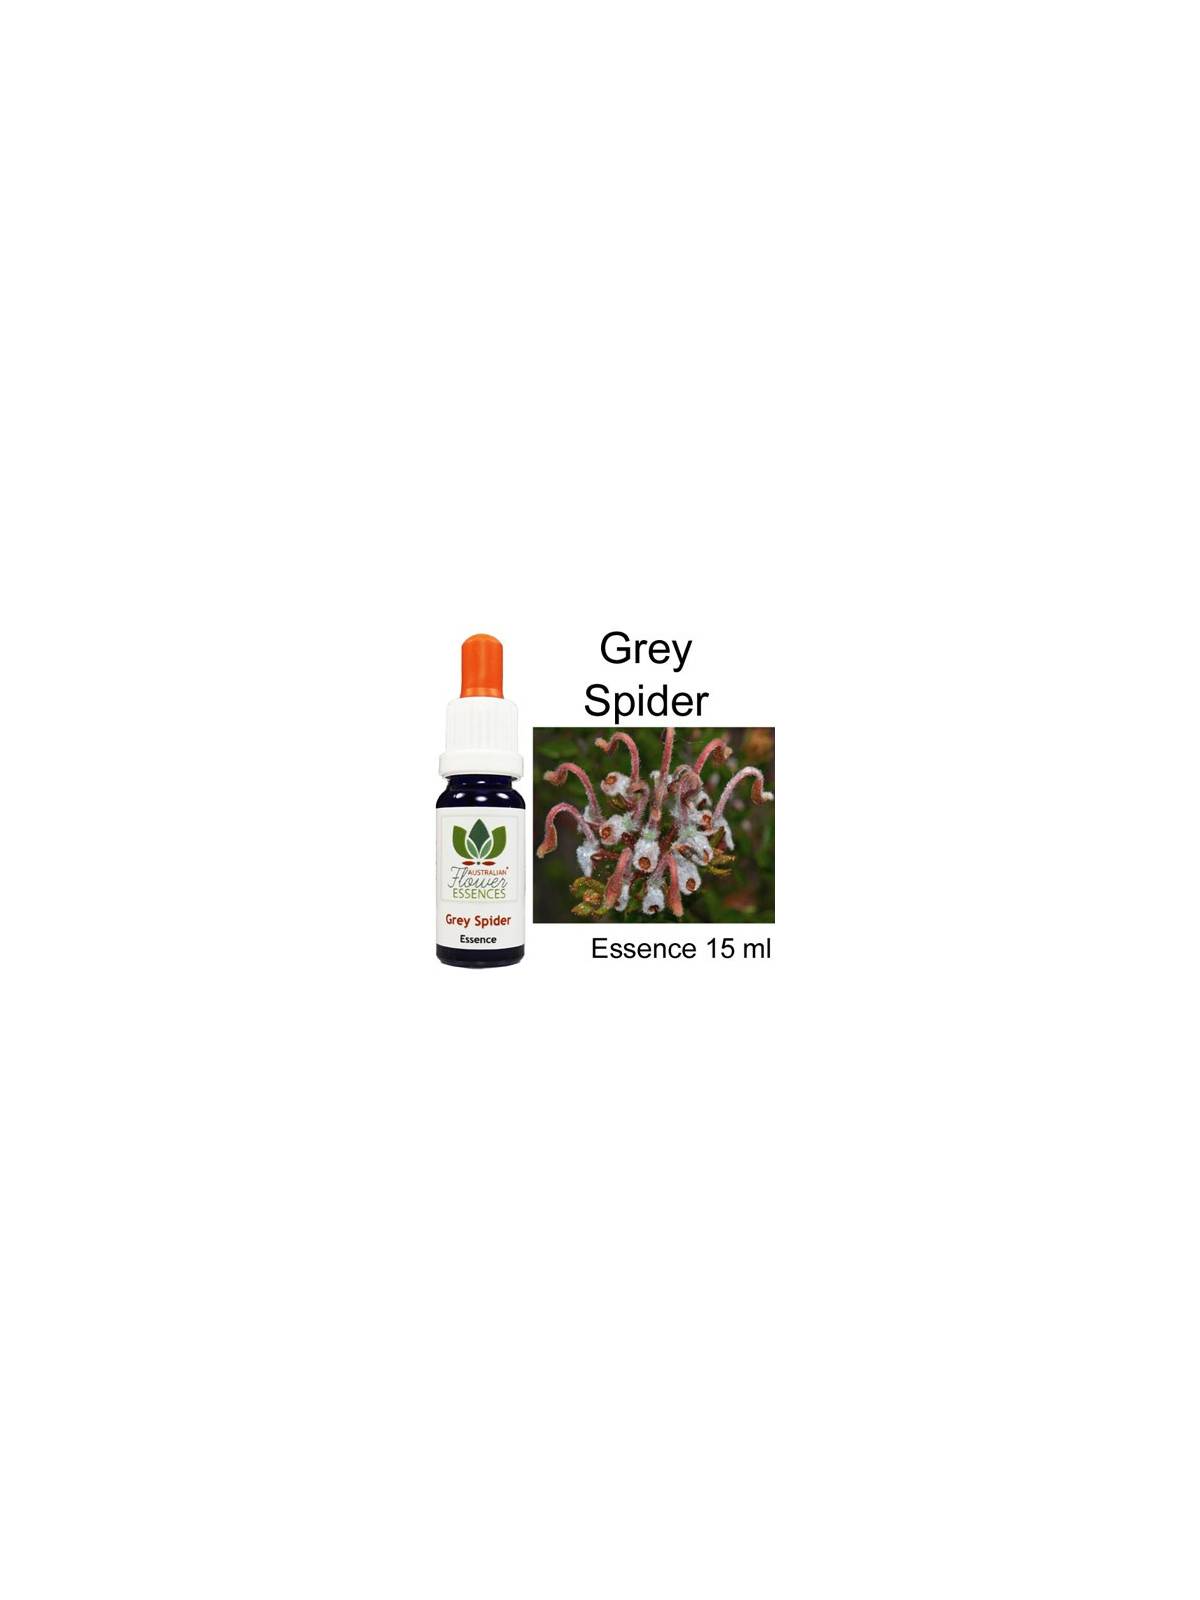 GREY SPIDER Australian Flower Essences 15 ml